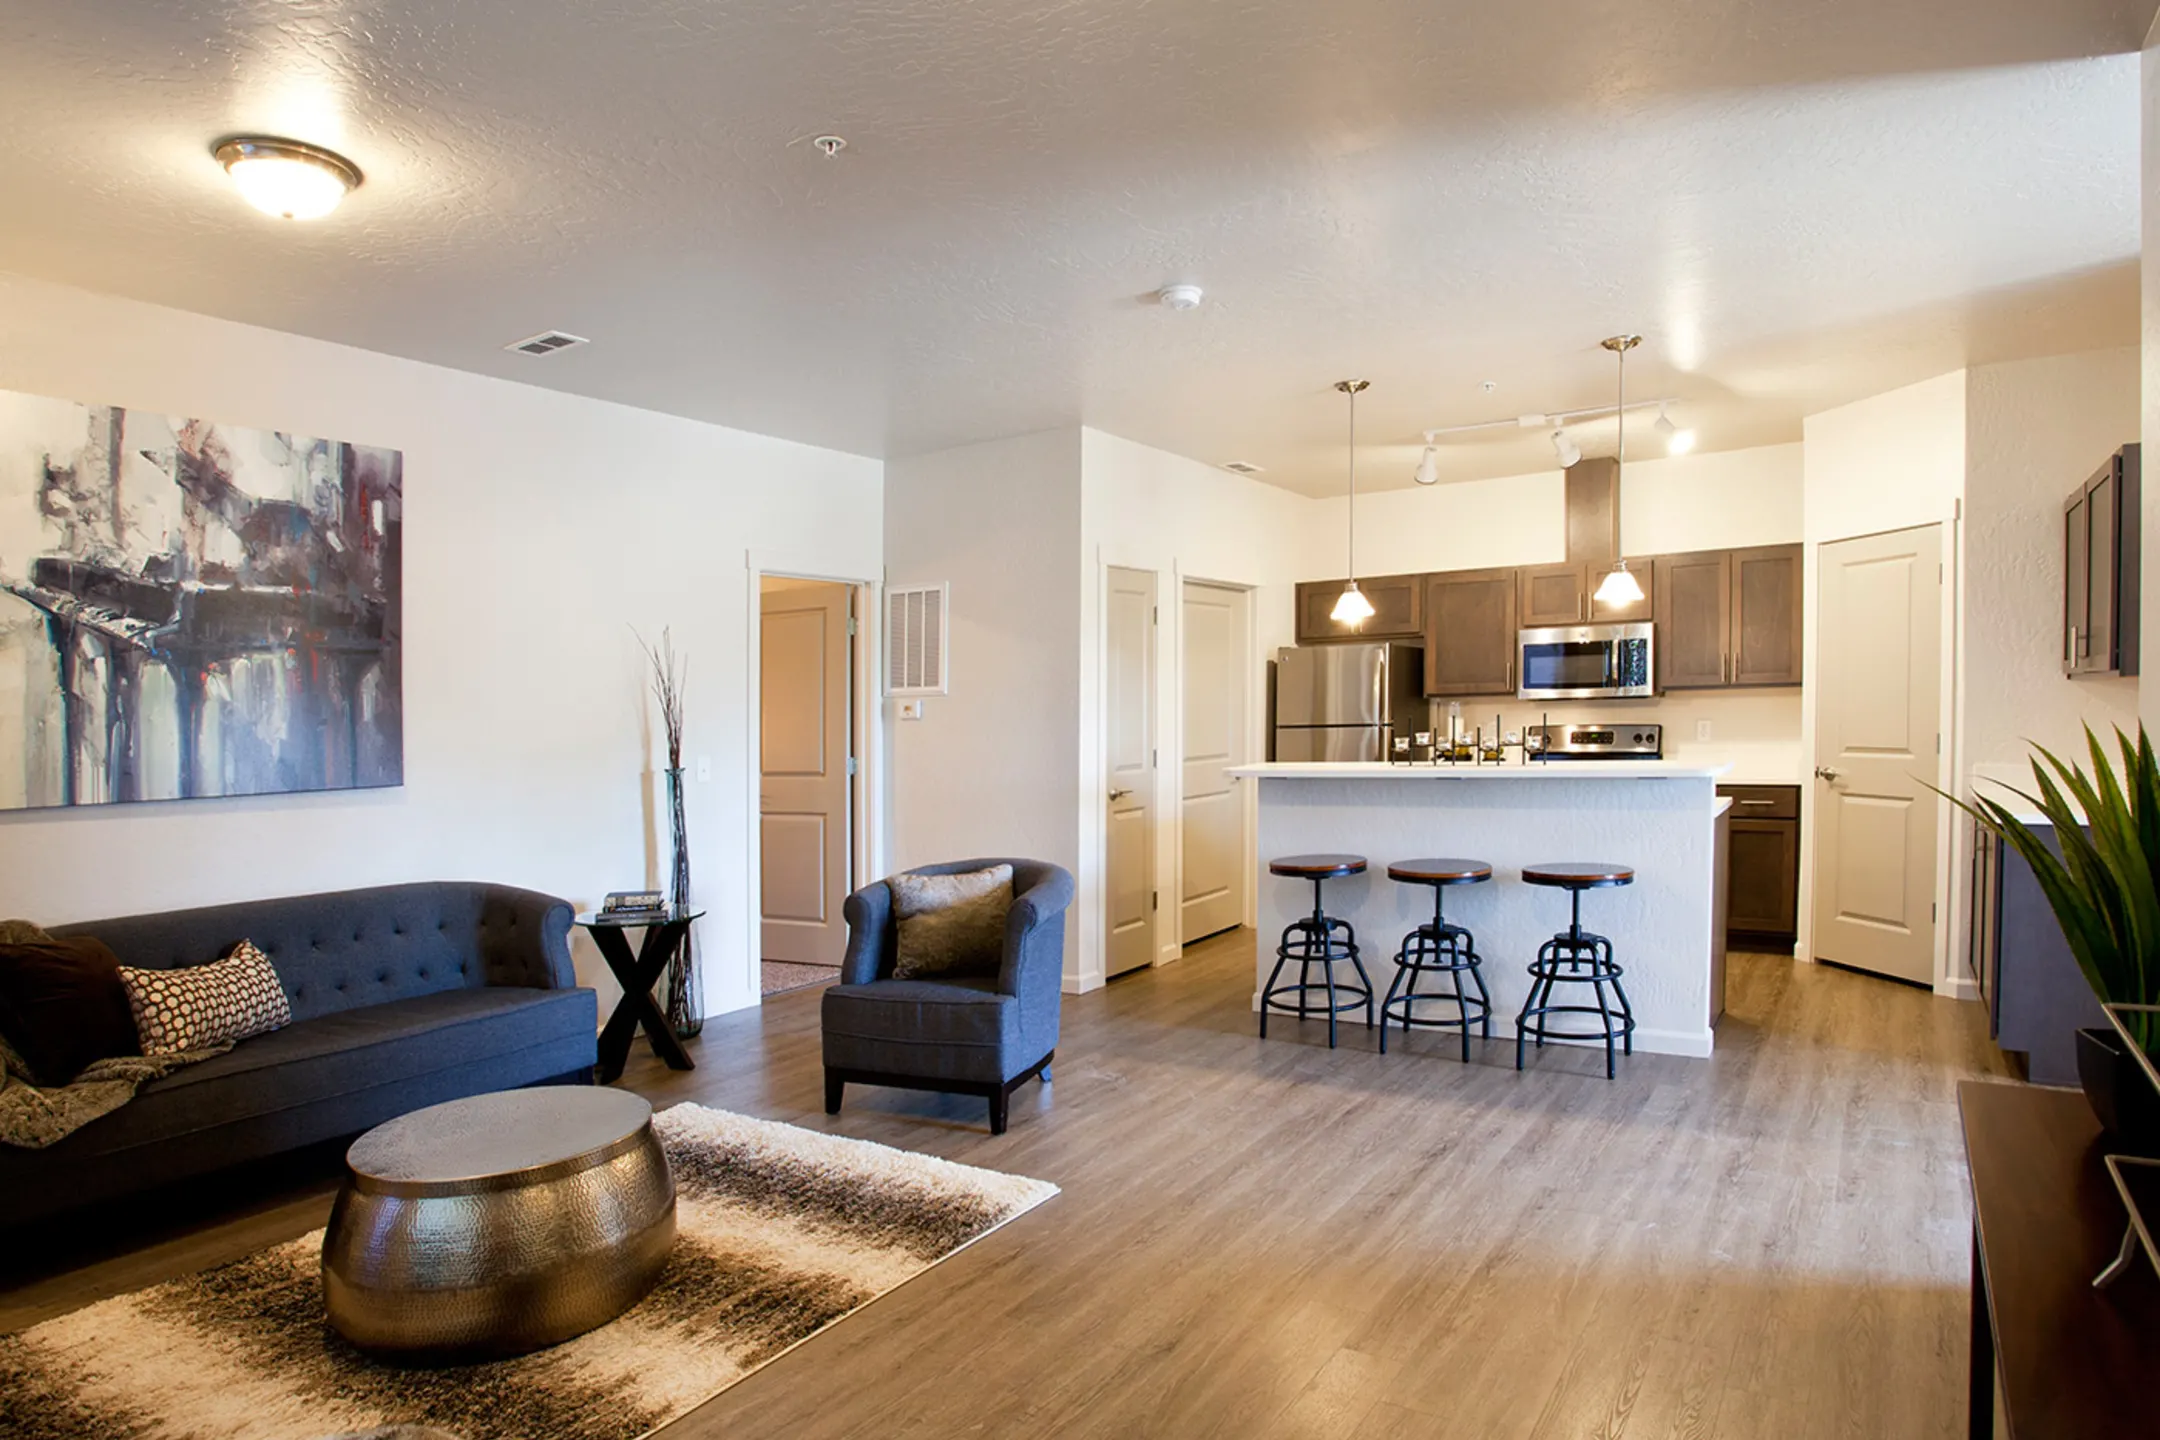 Legacy Villas Apartments - Liberty Lake, WA